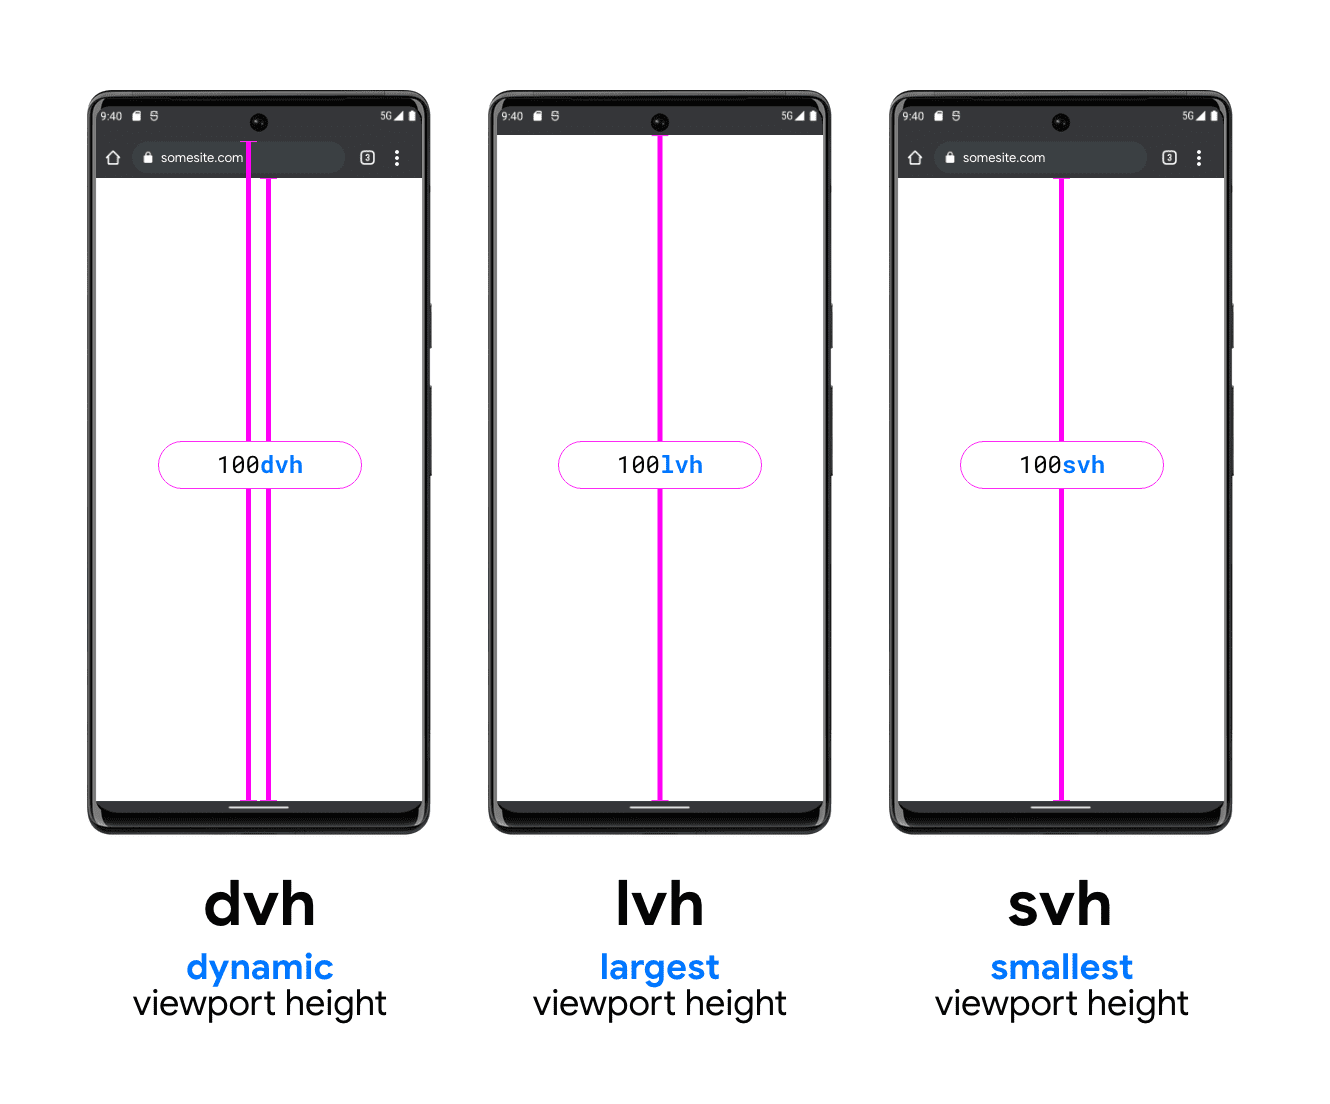 Изображение с тремя телефонами, помогающее проиллюстрировать DVH, LVH и SVH. В примере телефона DVH есть две вертикальные линии: одна между нижней частью панели поиска и нижней частью области просмотра, а другая - между верхней панелью поиска (под строкой состояния системы) и нижней частью области просмотра; показывая, как DVH может иметь любую из этих двух длин. LVH отображается посередине с одной линией между нижней частью строки состояния устройства и кнопкой окна просмотра телефона. Последний пример модуля SVH, показывающий линию от нижней части панели поиска браузера до нижней части области просмотра.